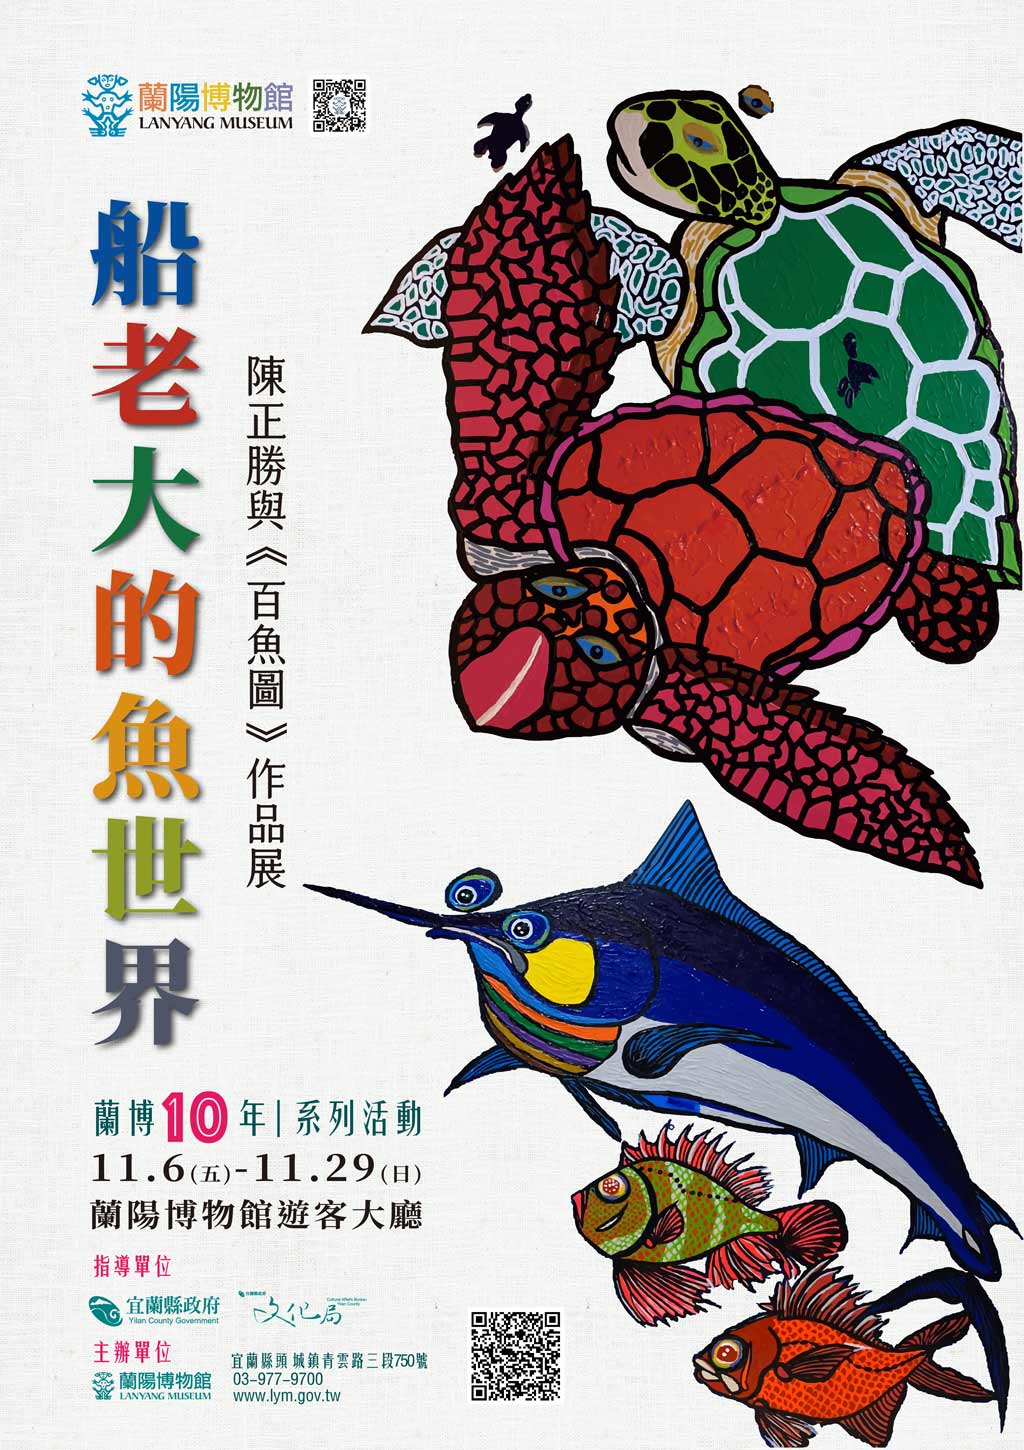 船老大的魚世界—陳正勝與《百魚圖》作品展海報